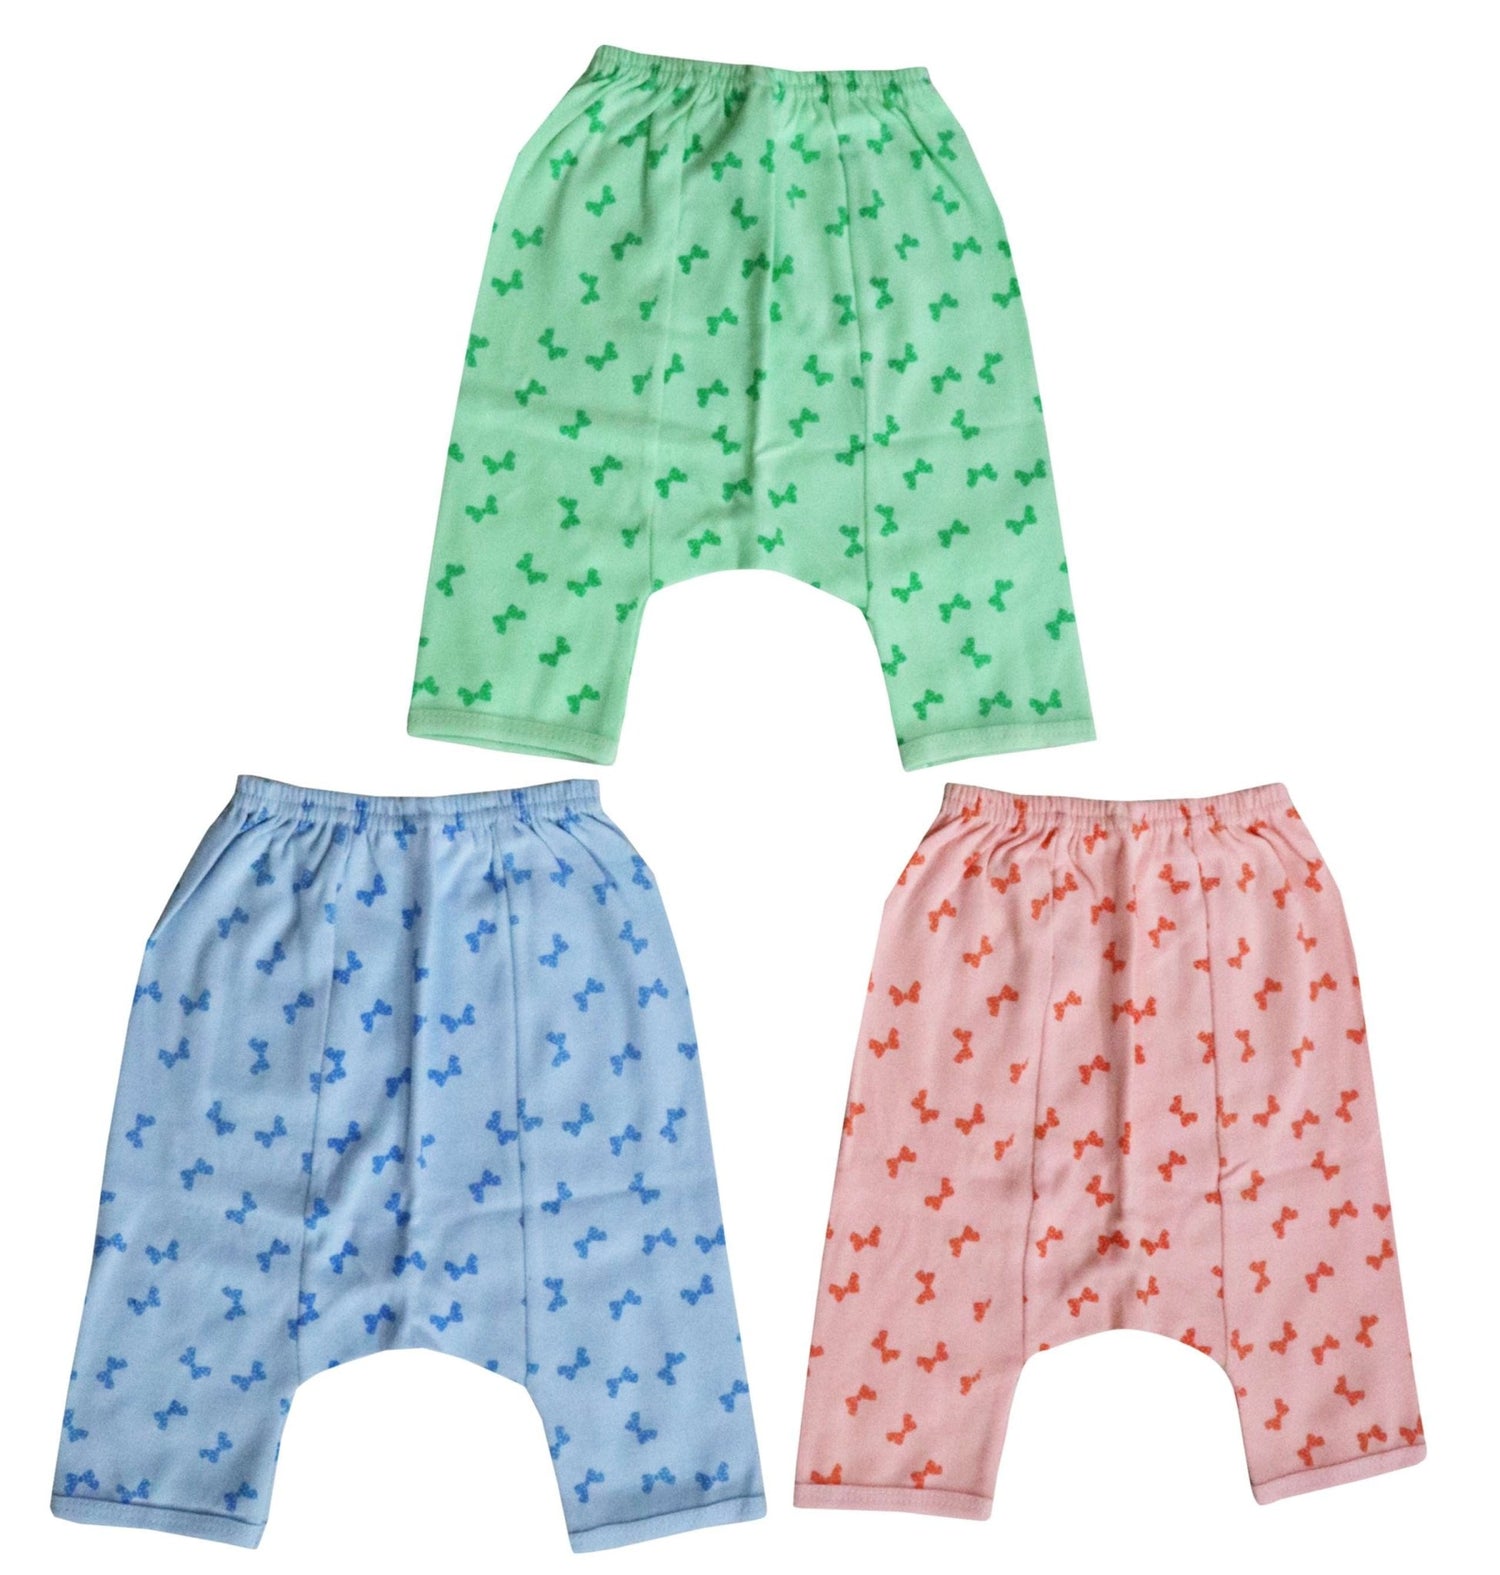 Newborn pure soft cotton pajamas | diaper pants pack of 3 pcs. ( 0-3 months ) - FAVISM